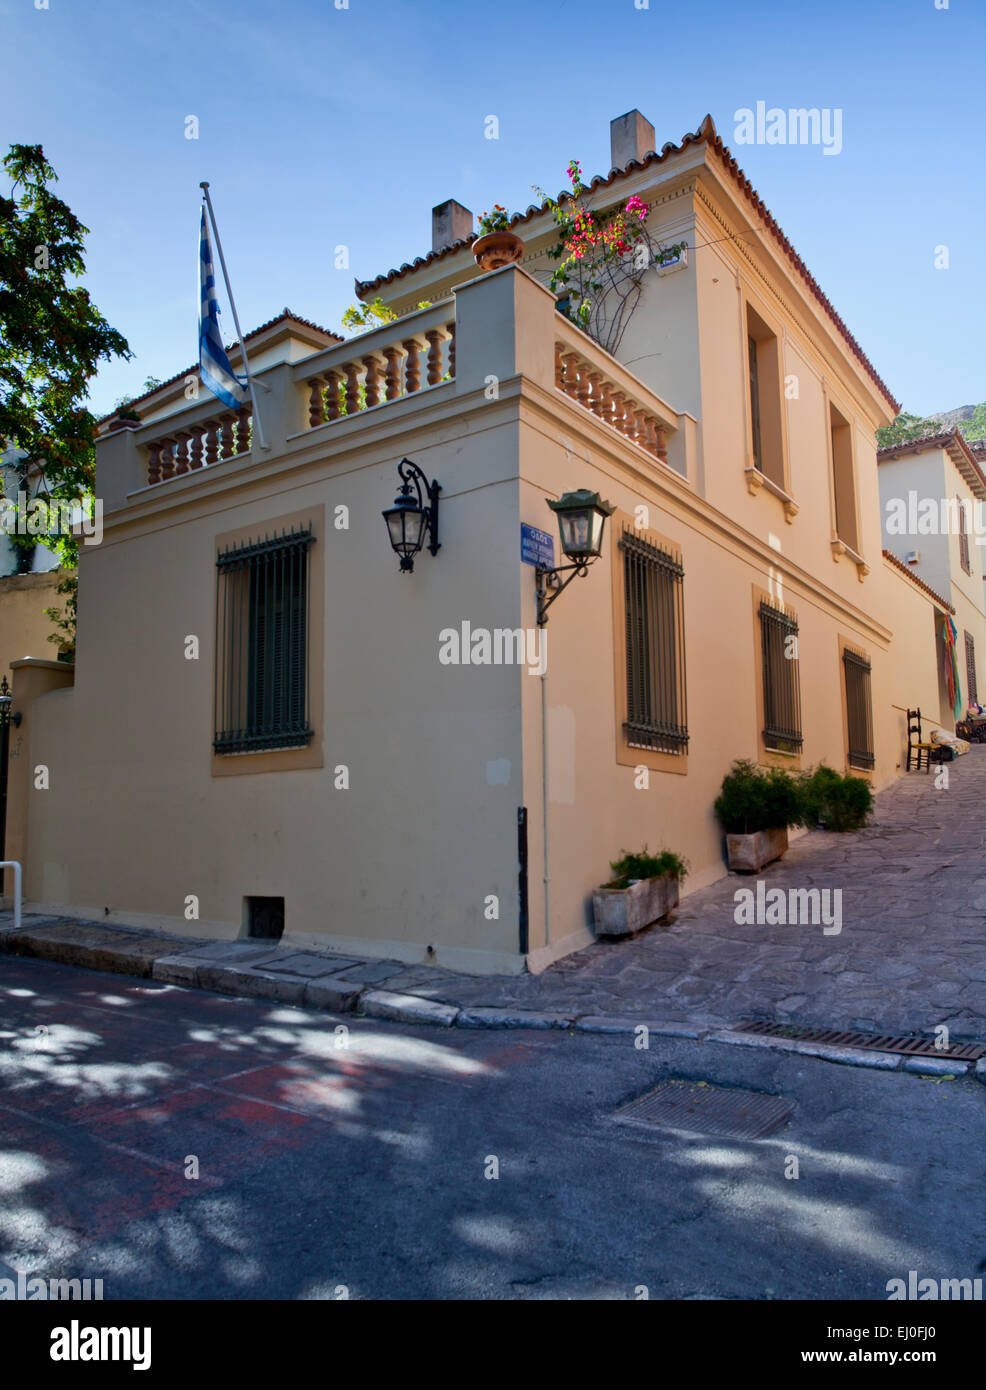 Typische Straßenszene in Plaka in Athen, Griechenland Stockfoto